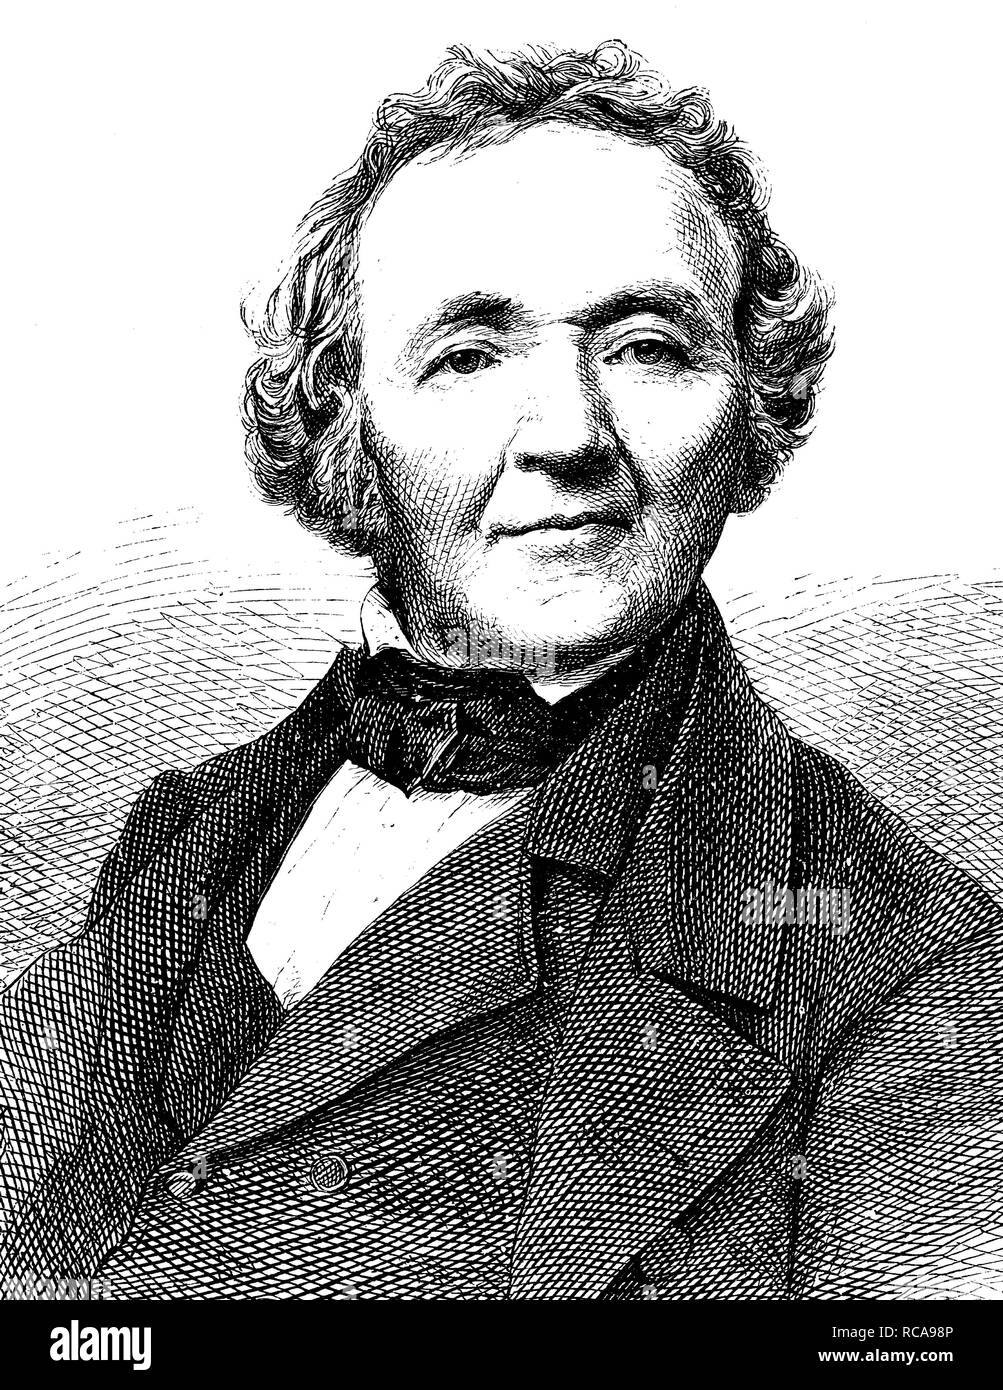 Franz Leopold Ranke, à partir de 1865 von Ranke, 1795-1886, un historien allemand, historiographe de l'État prussien, université Banque D'Images